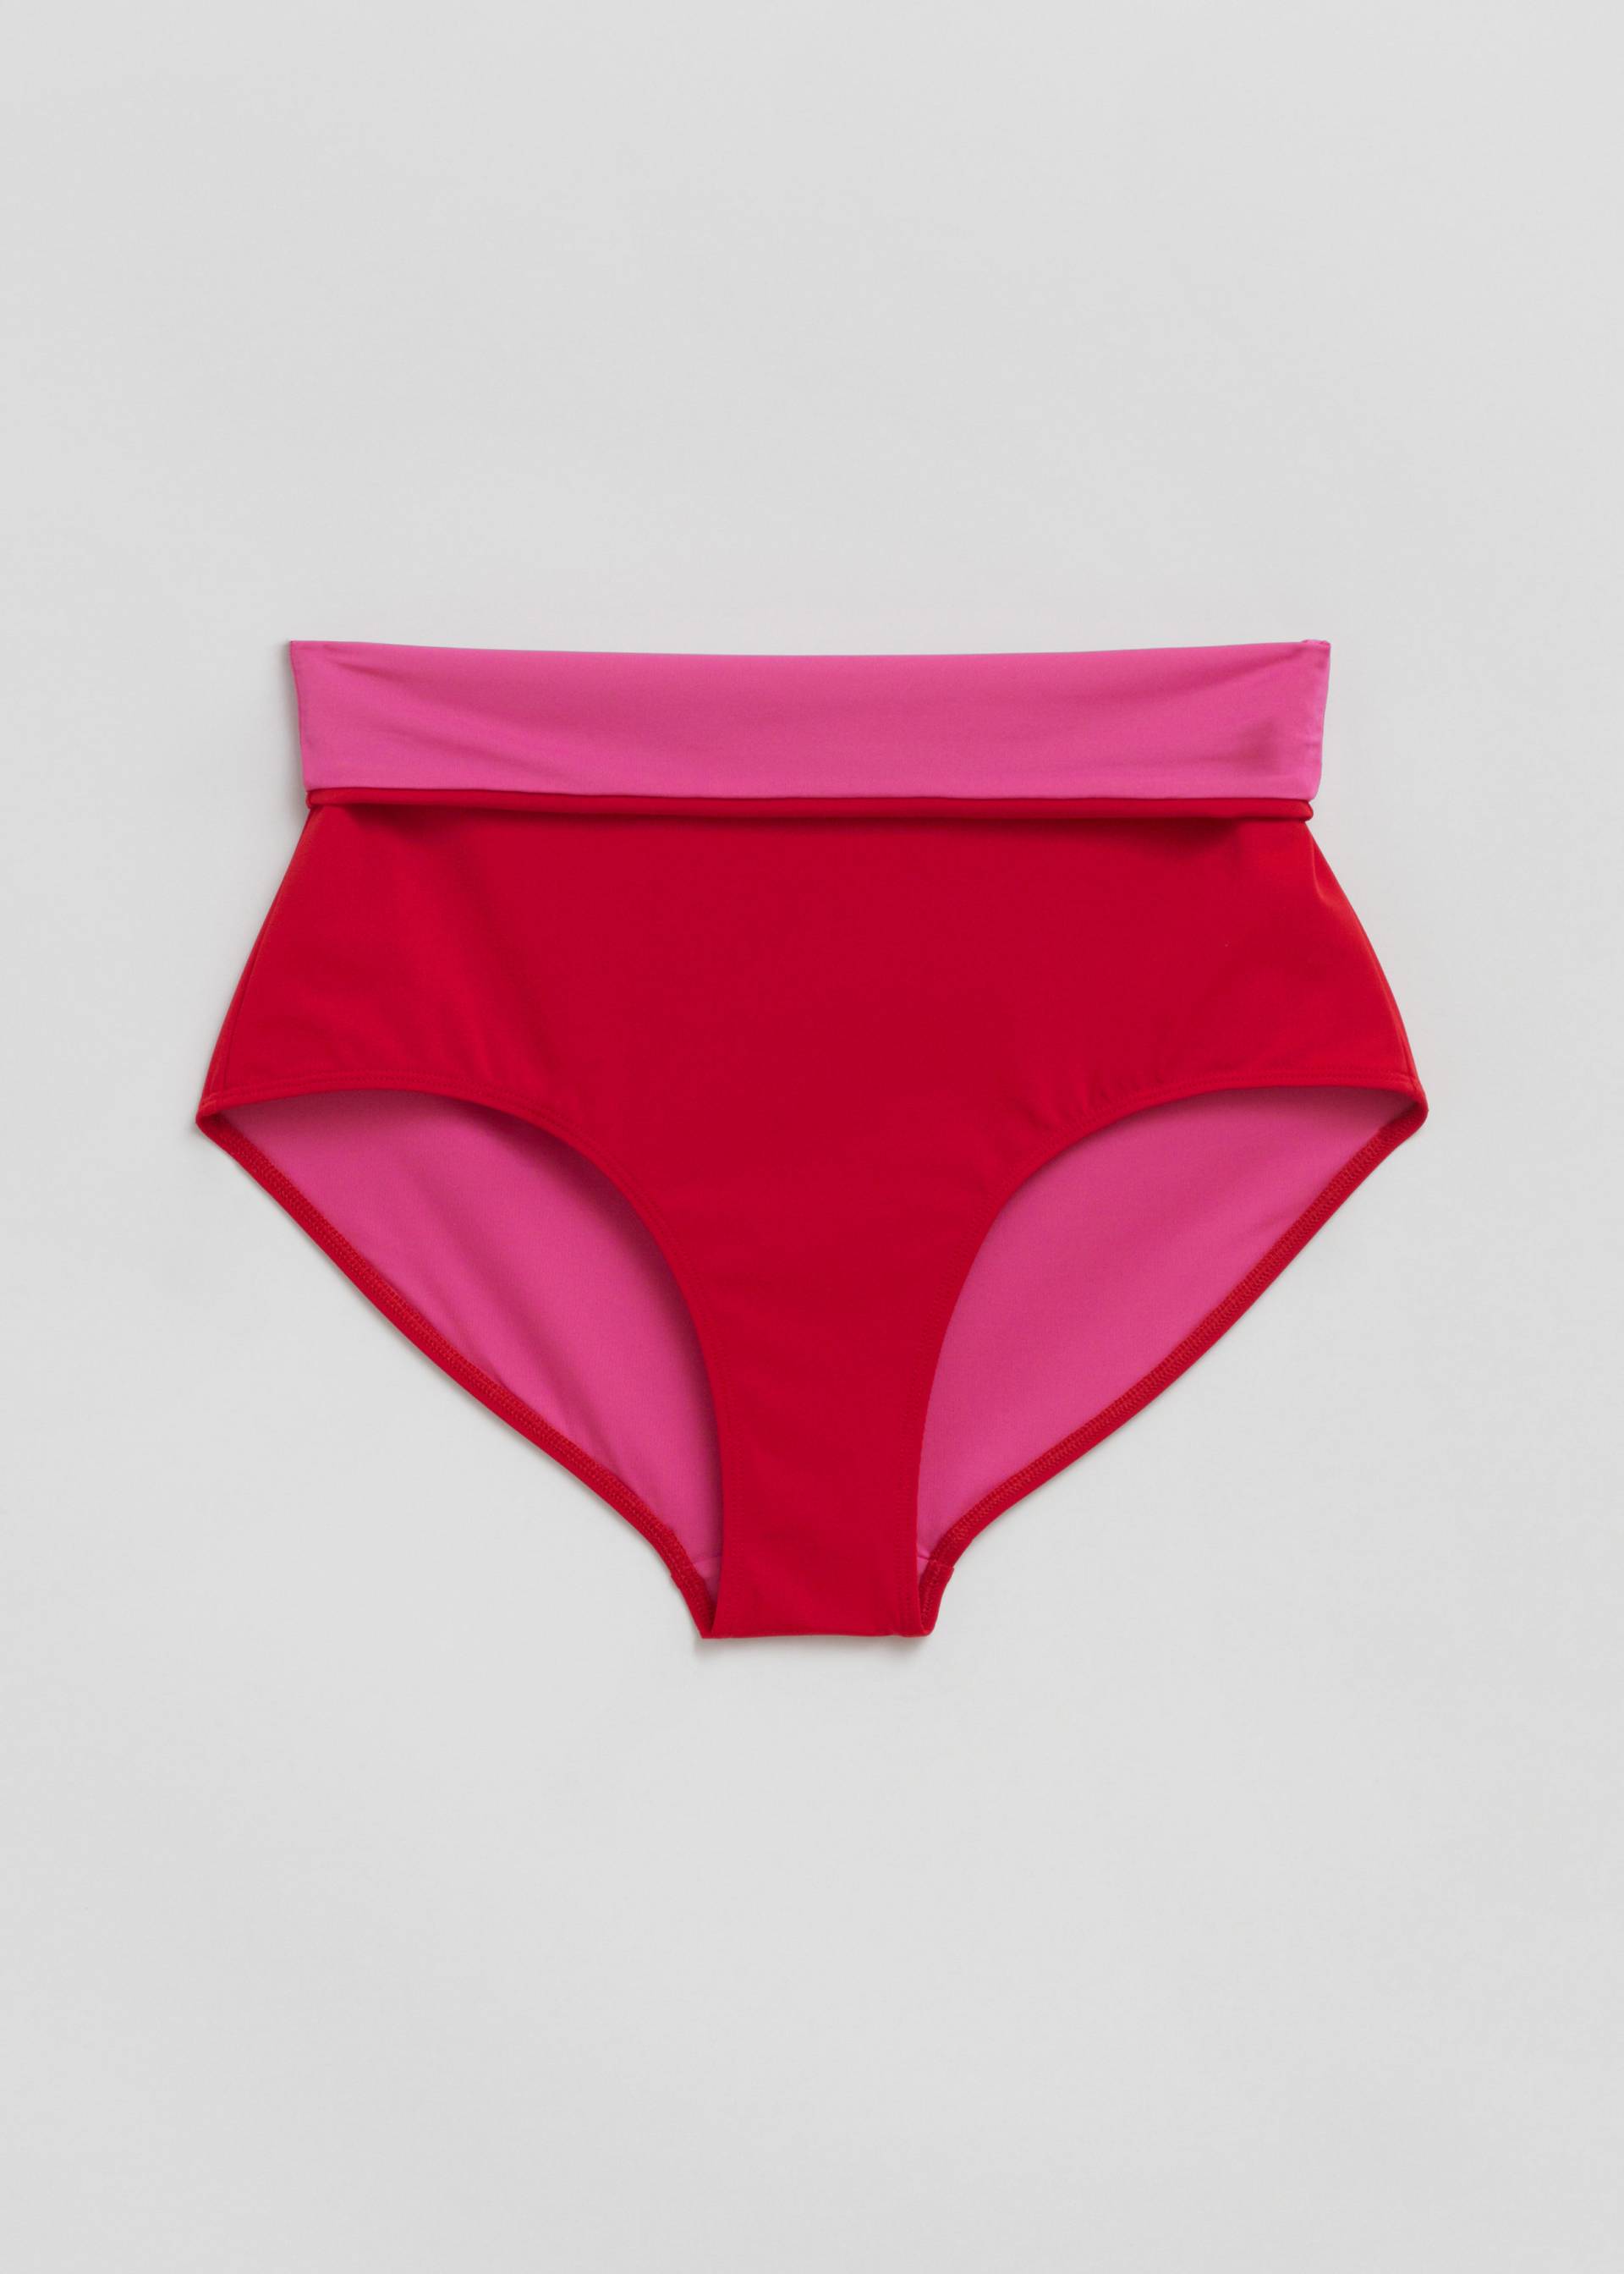 & Other Stories Bikinihose mit hohem Bund Rubinrot/Fuchsia, Bikini-Unterteil in Größe 36. Farbe: Ruby red/fuchsia von & Other Stories